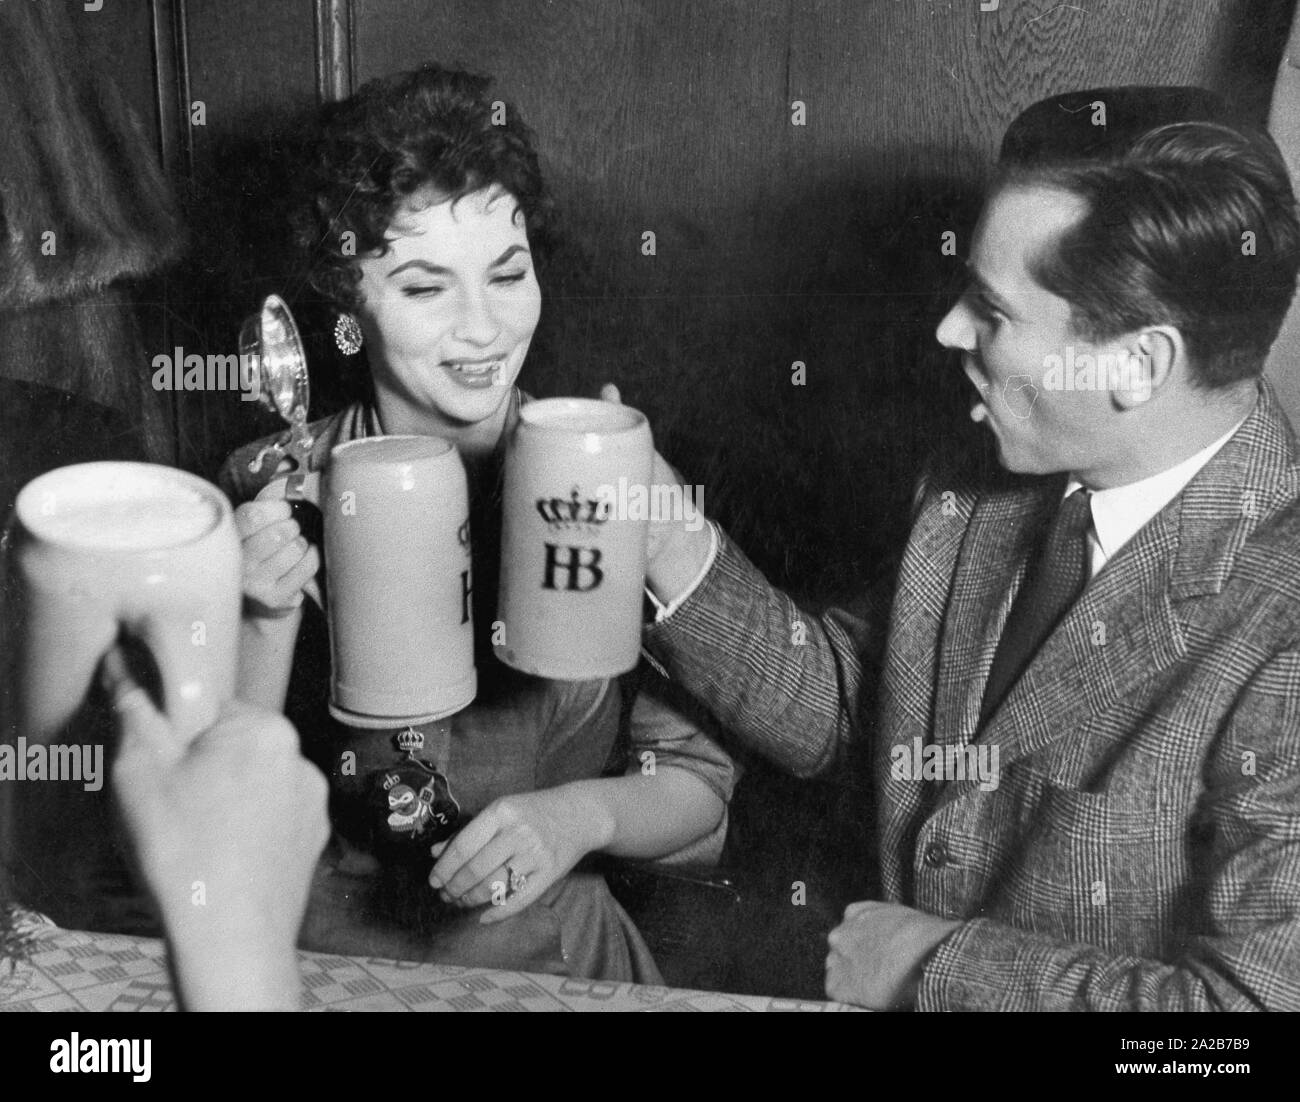 L'attrice italiana Gina Lollobrigida e suo marito Milko Skofic bere birra di Monaco di Baviera Hofbraeuhaus. Avviso di Copyright: Max Scheler / SZ foto. Foto Stock